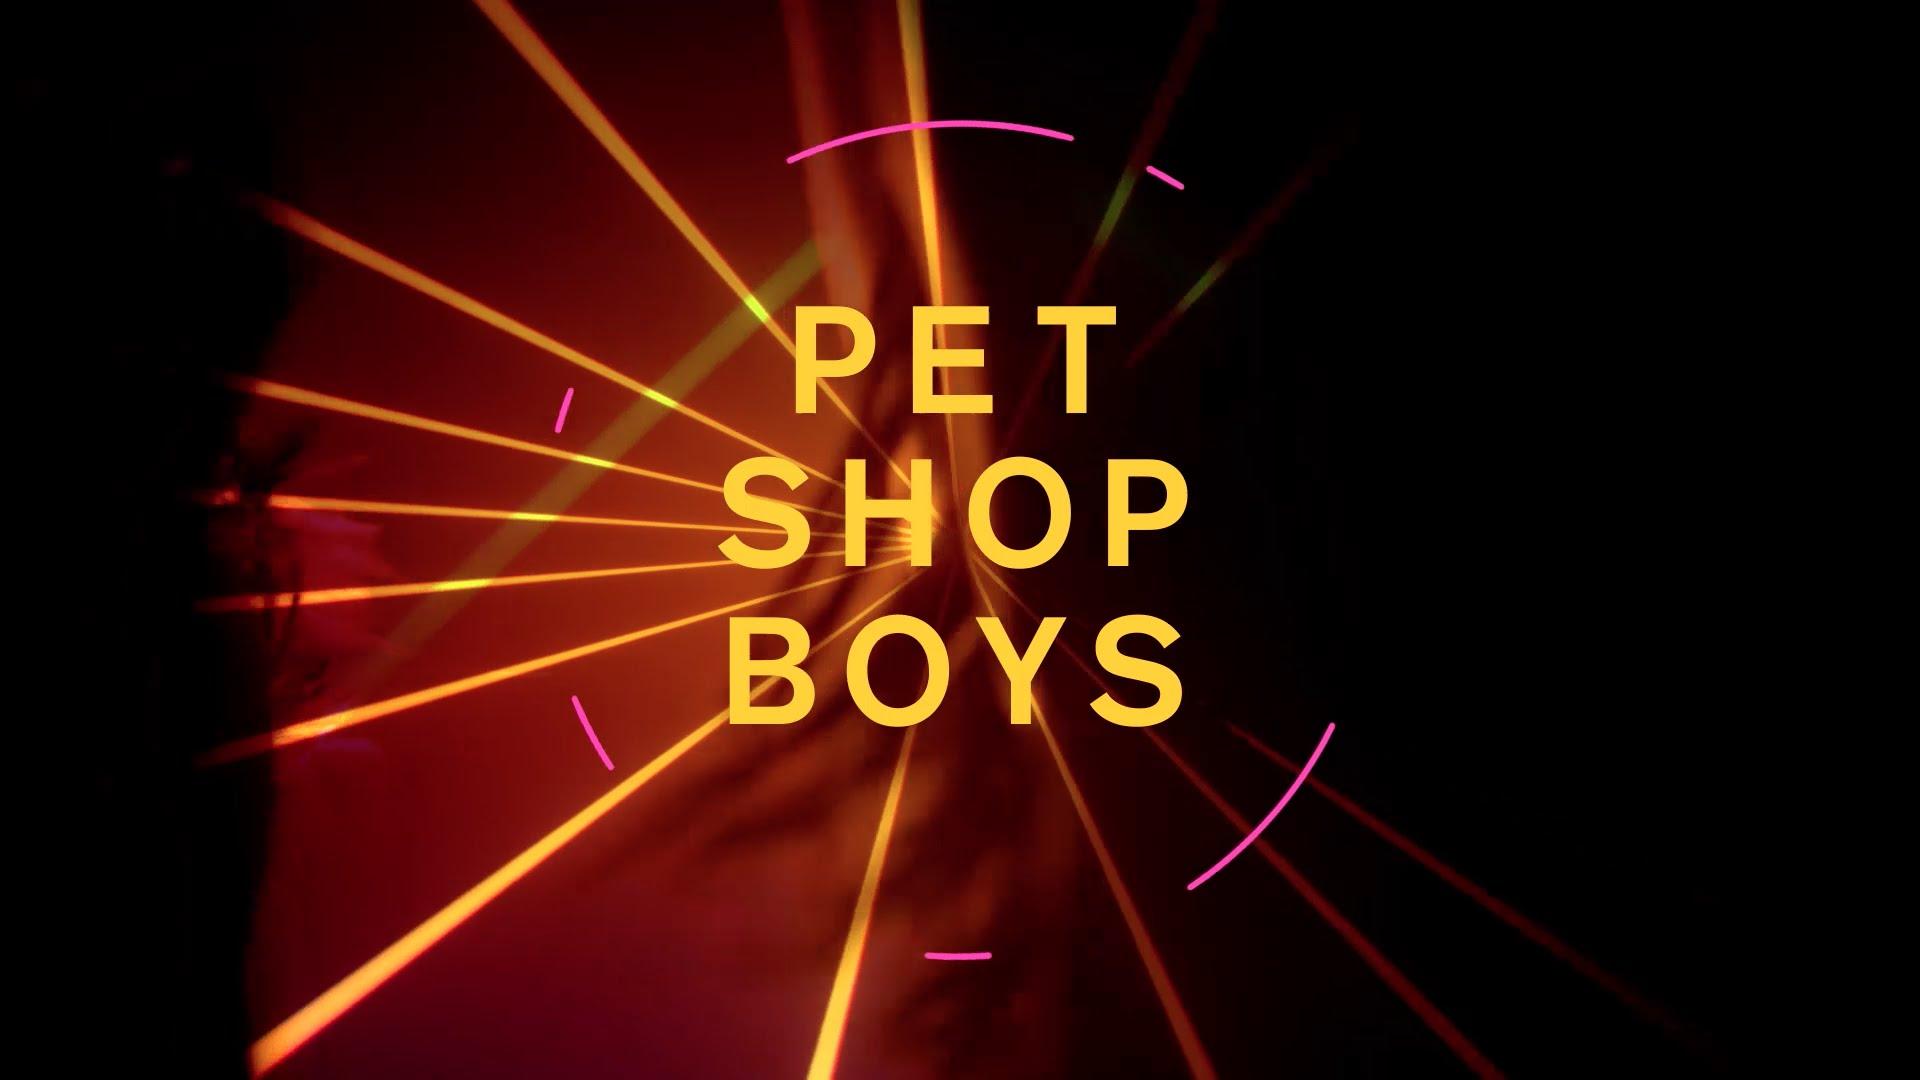 Loneliness pet shop boys. Pet shop boys super 2016. Pet shop boys альбомы. Pet shop boys обложки альбомов. Pet shop boys альбом super.